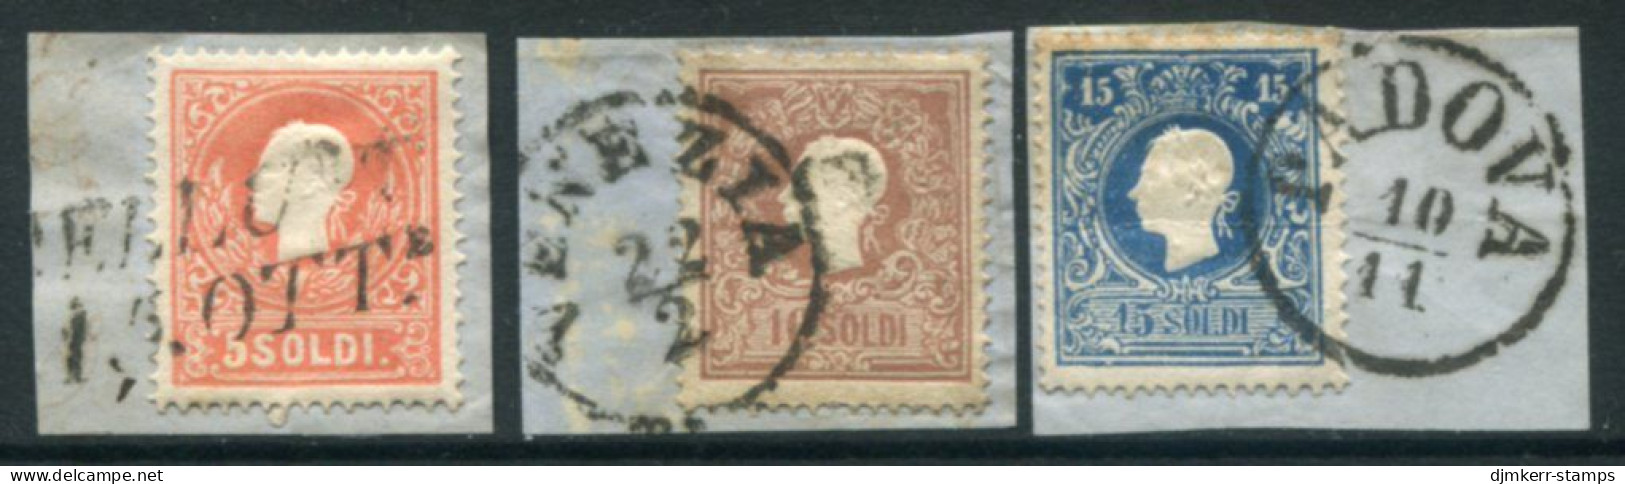 LOMBARDY-VENETIA 1858 Franz Joseph.5, 10 15 So. Type II Used On Pieces.  Michel 9-11 II - Oblitérés